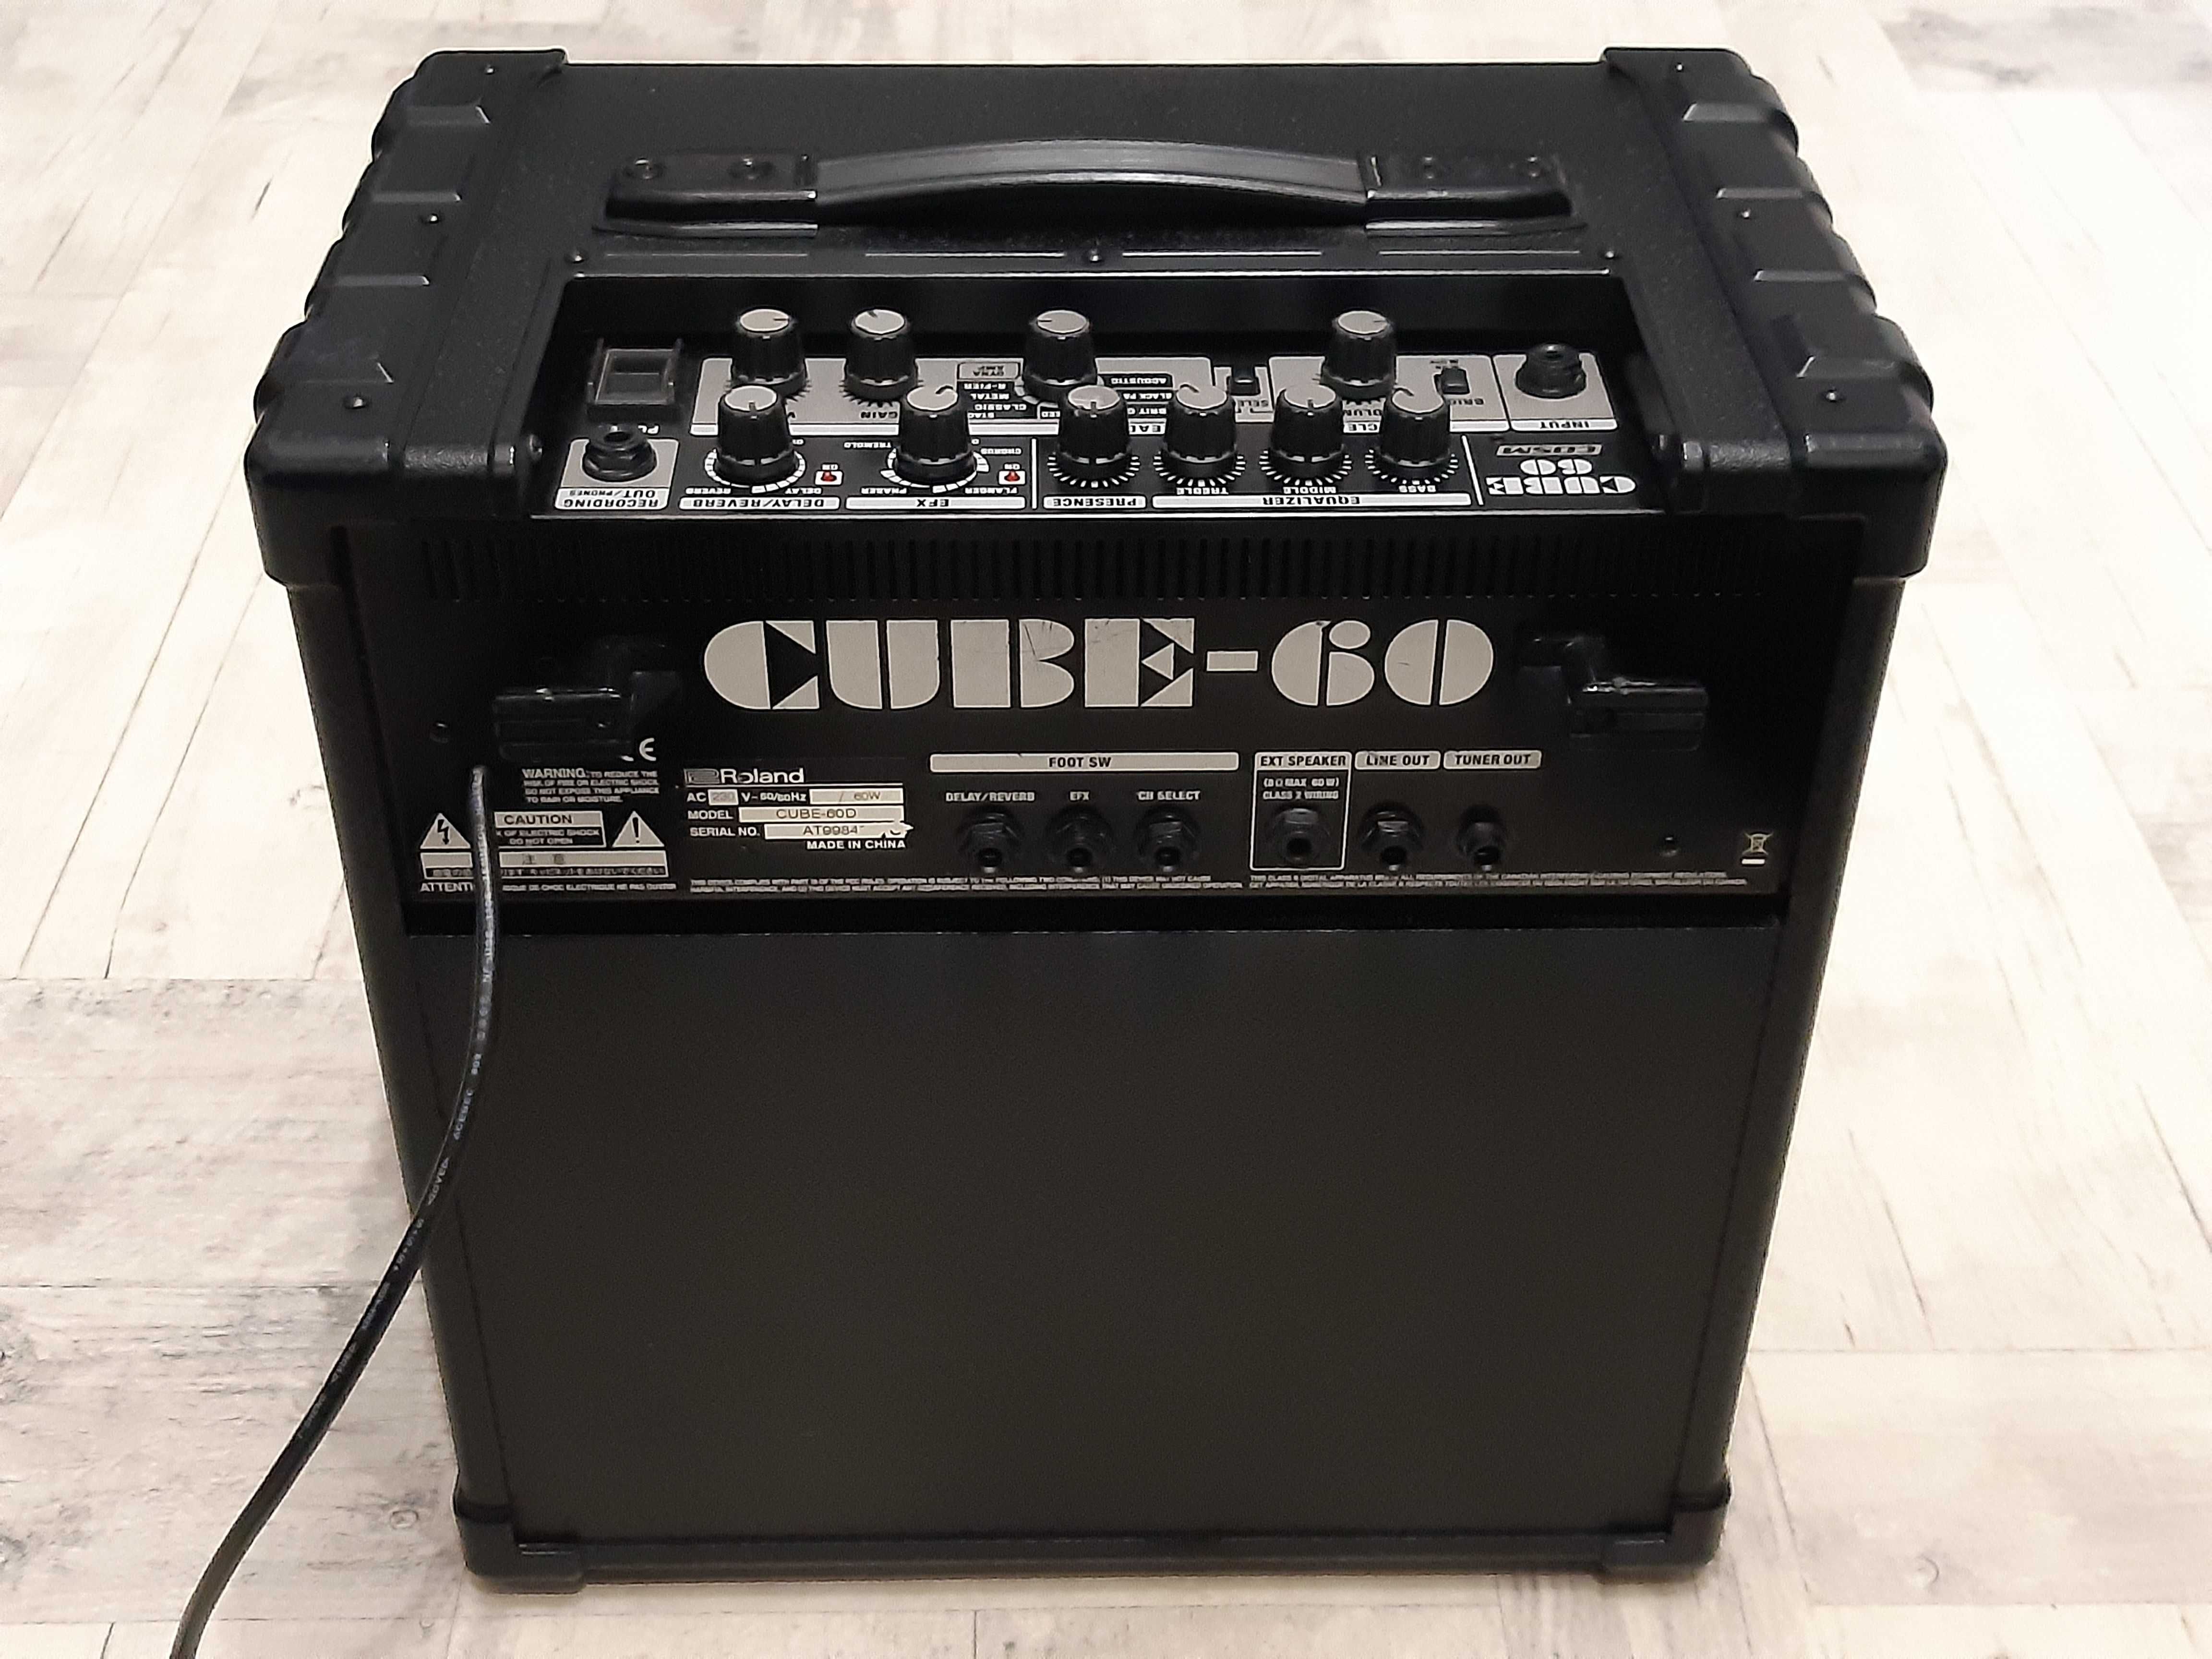 Super Wzmacniacz Roland Cube 60-efekty Boss-wyjście na kolumnę-wysyłka